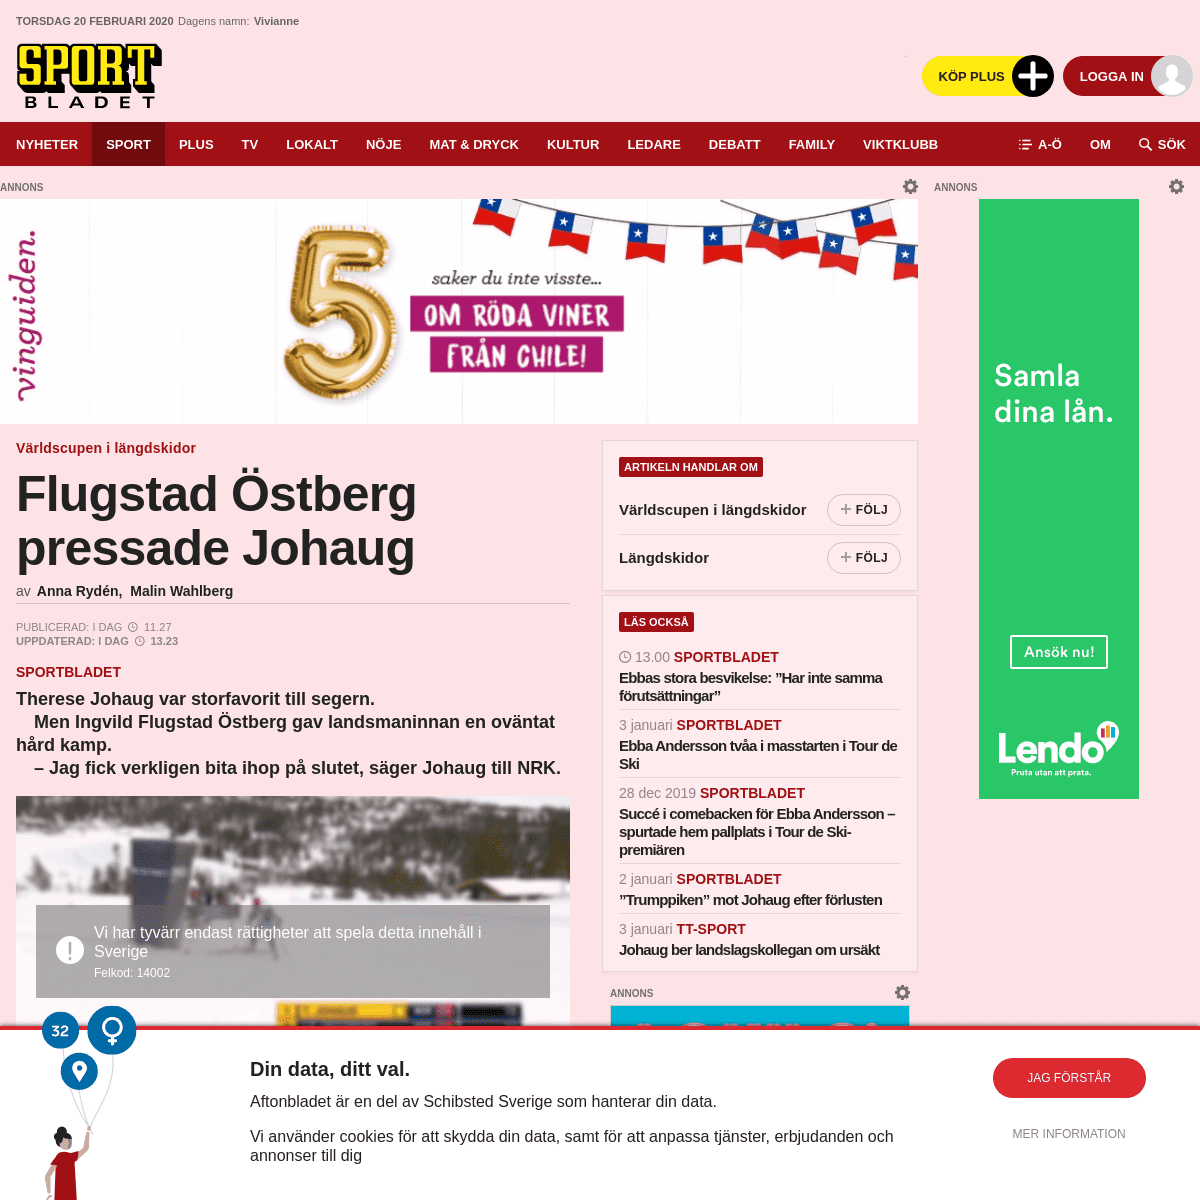 A complete backup of www.aftonbladet.se/sportbladet/a/xPEw88/flugstad-ostberg-pressade-johaug